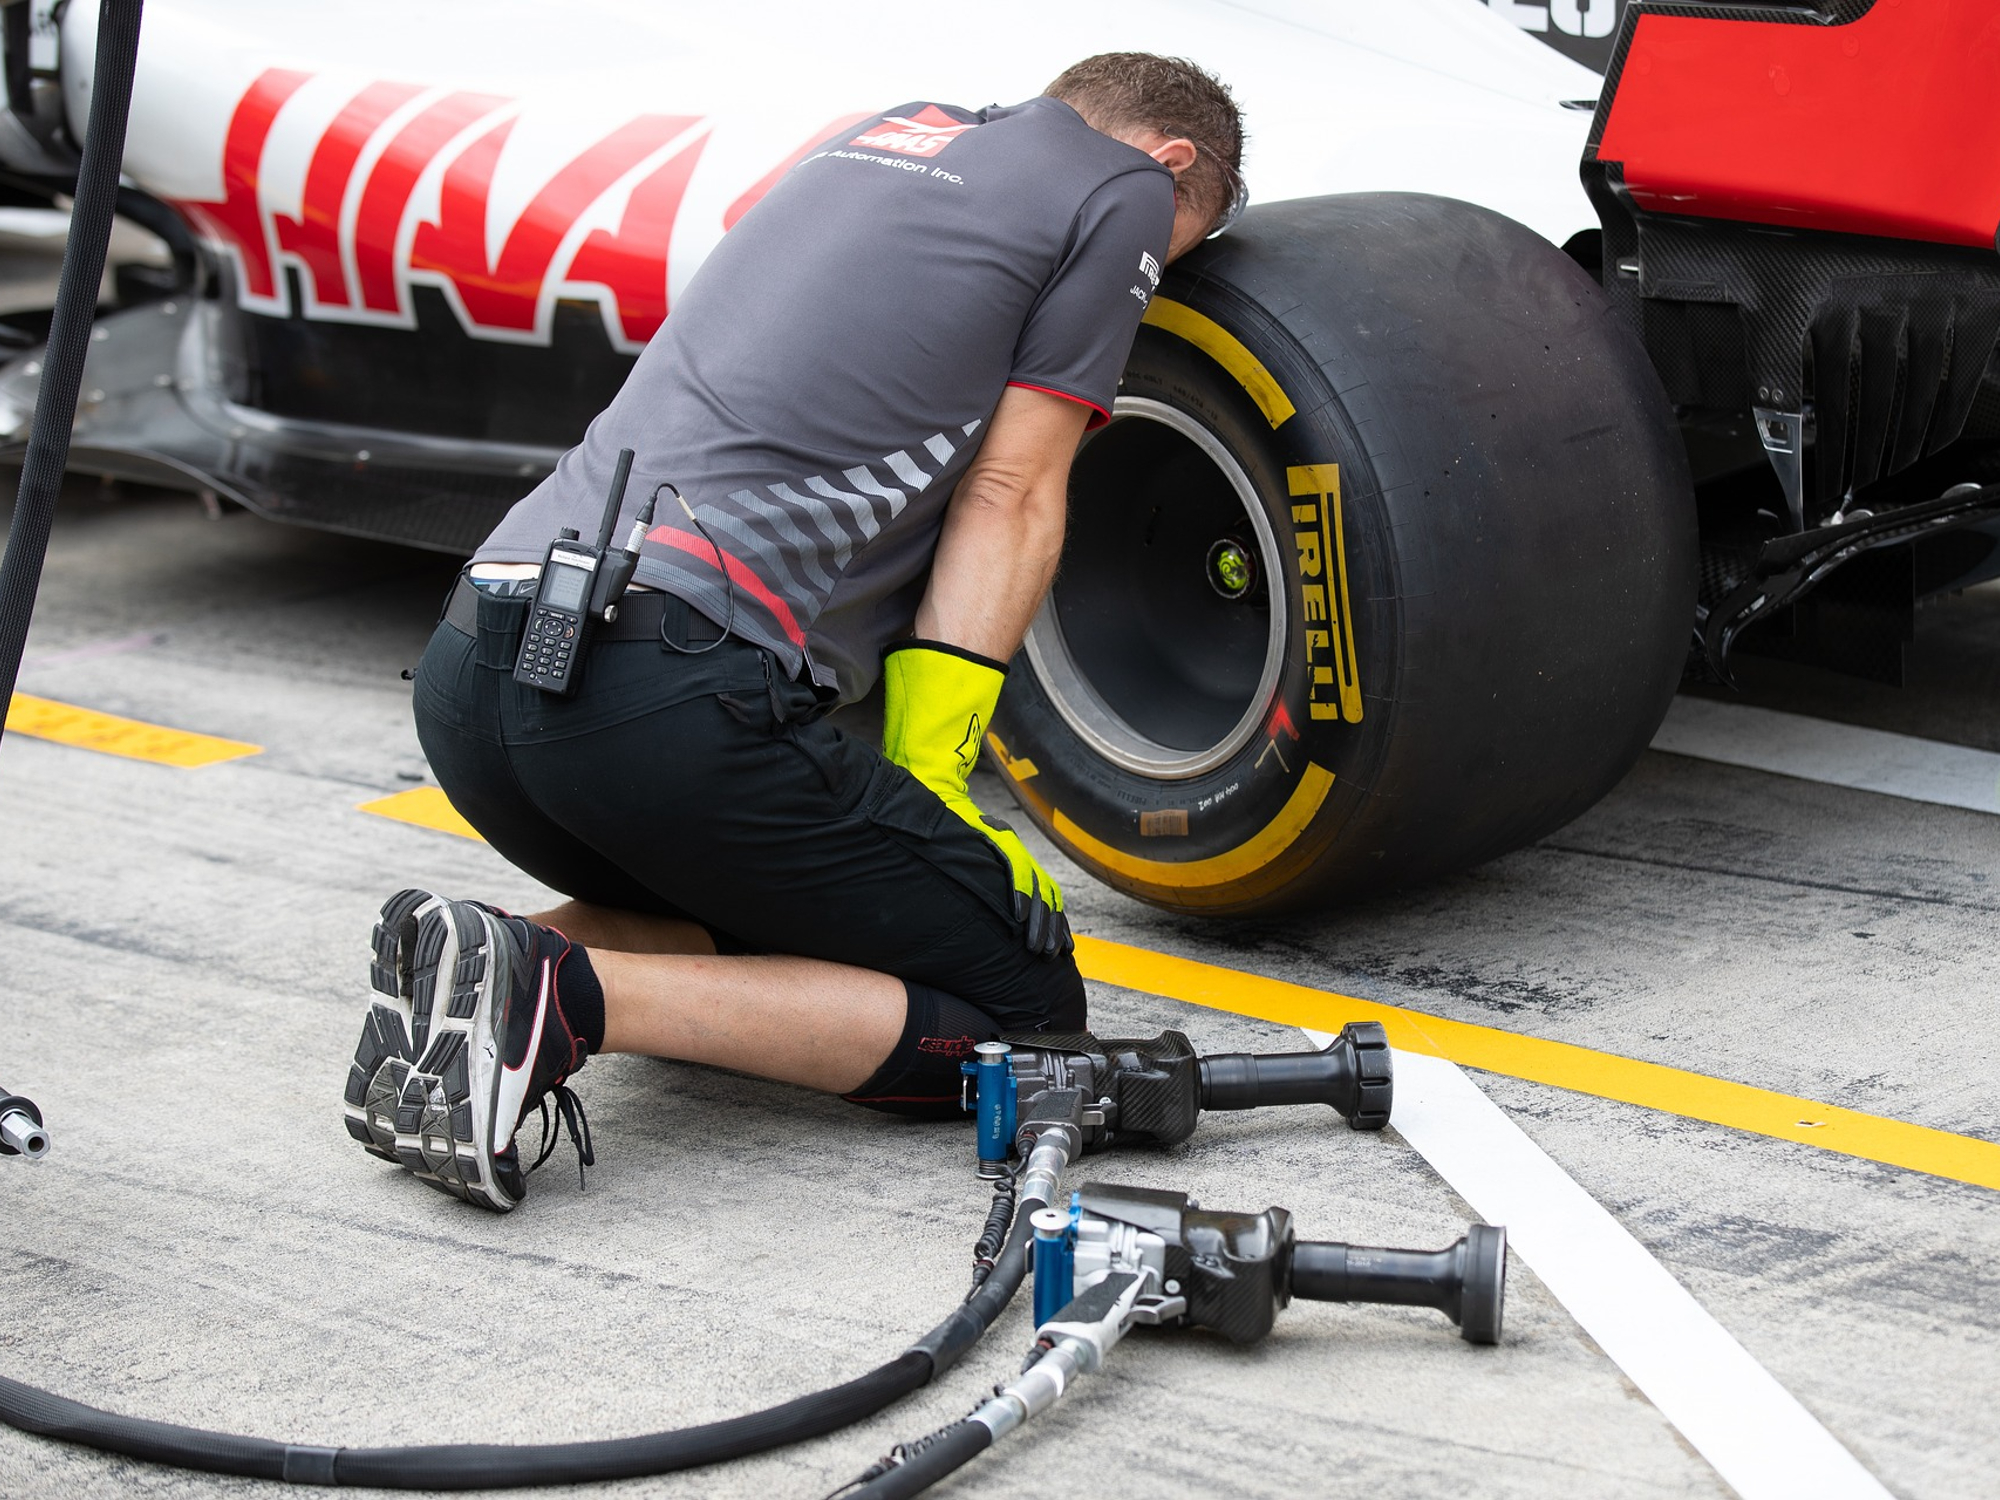 Desmontadora de neumáticos Hass Racing F1 con un coche de carreras de F1 apoyando la cabeza en un neumático de coche de carreras Pirelli F1.